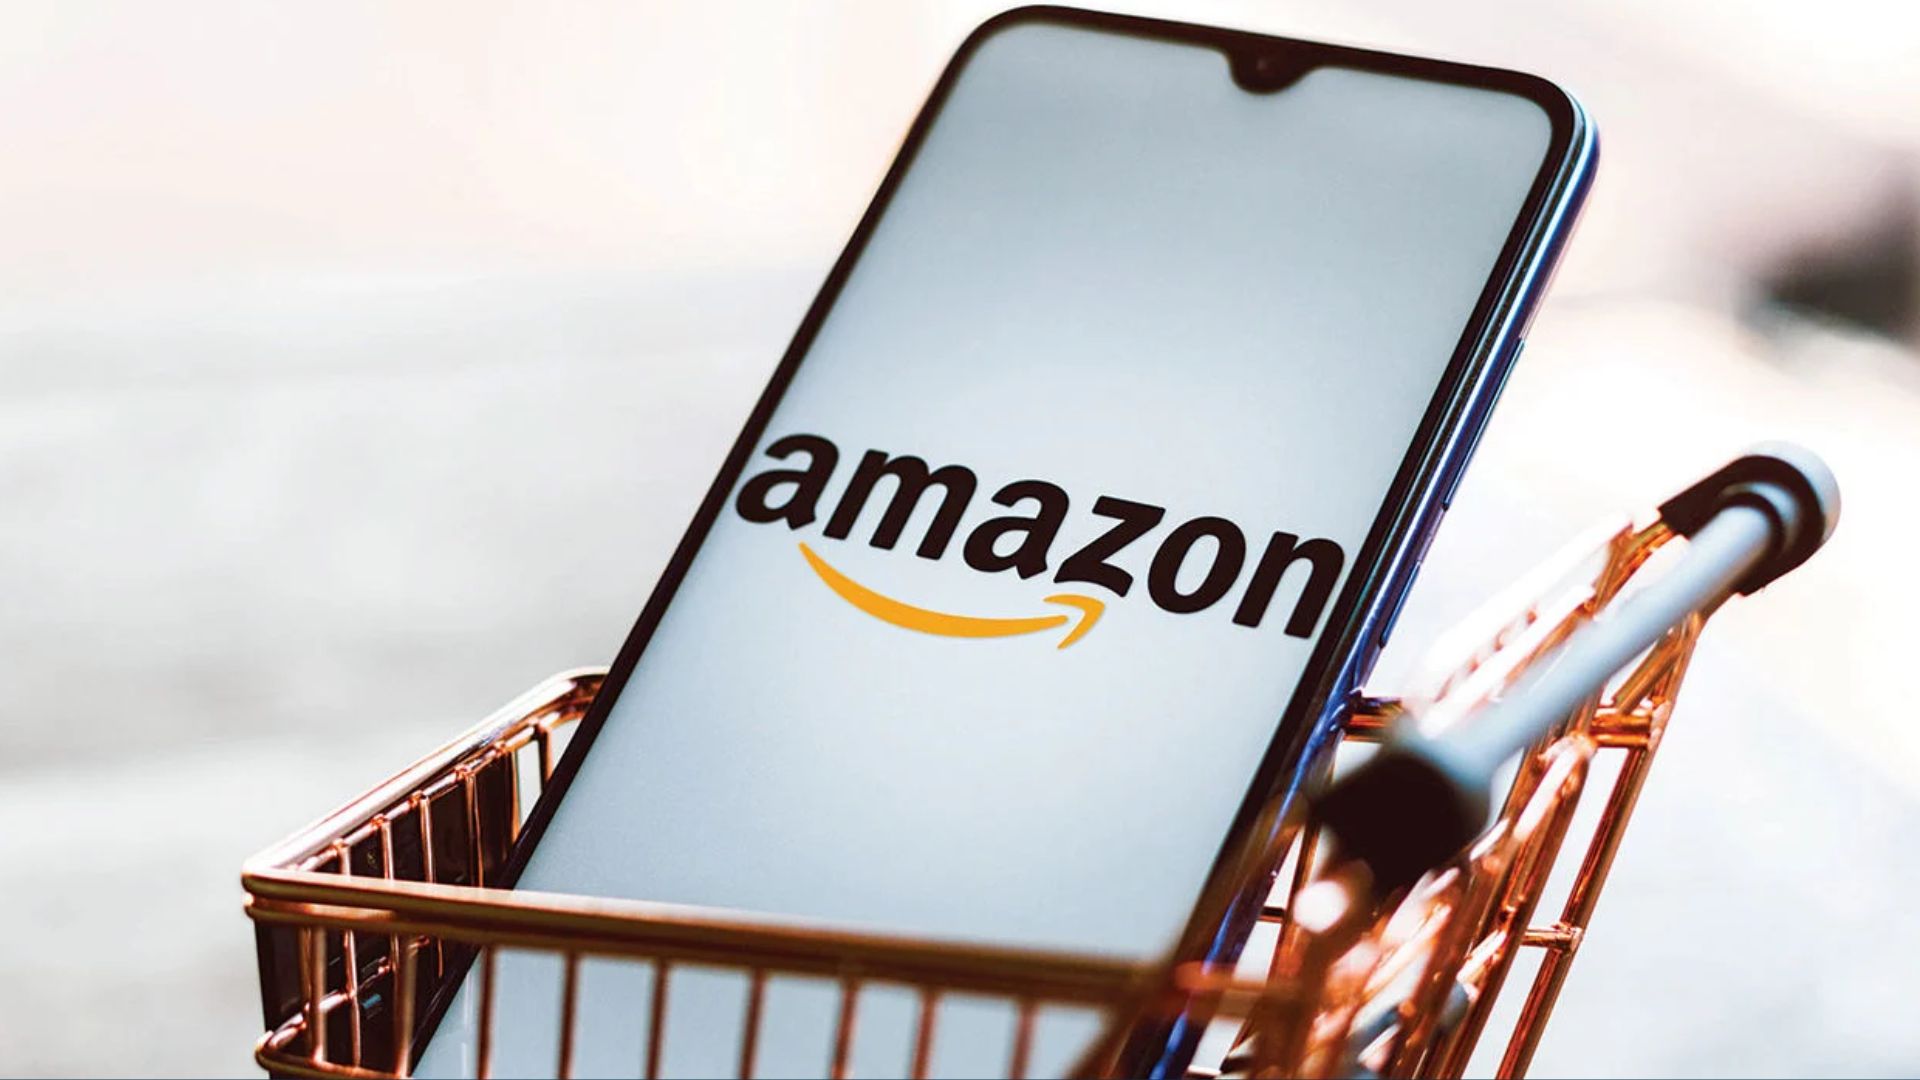 Amazon planea impulsar tecnología para compras sin cajeros